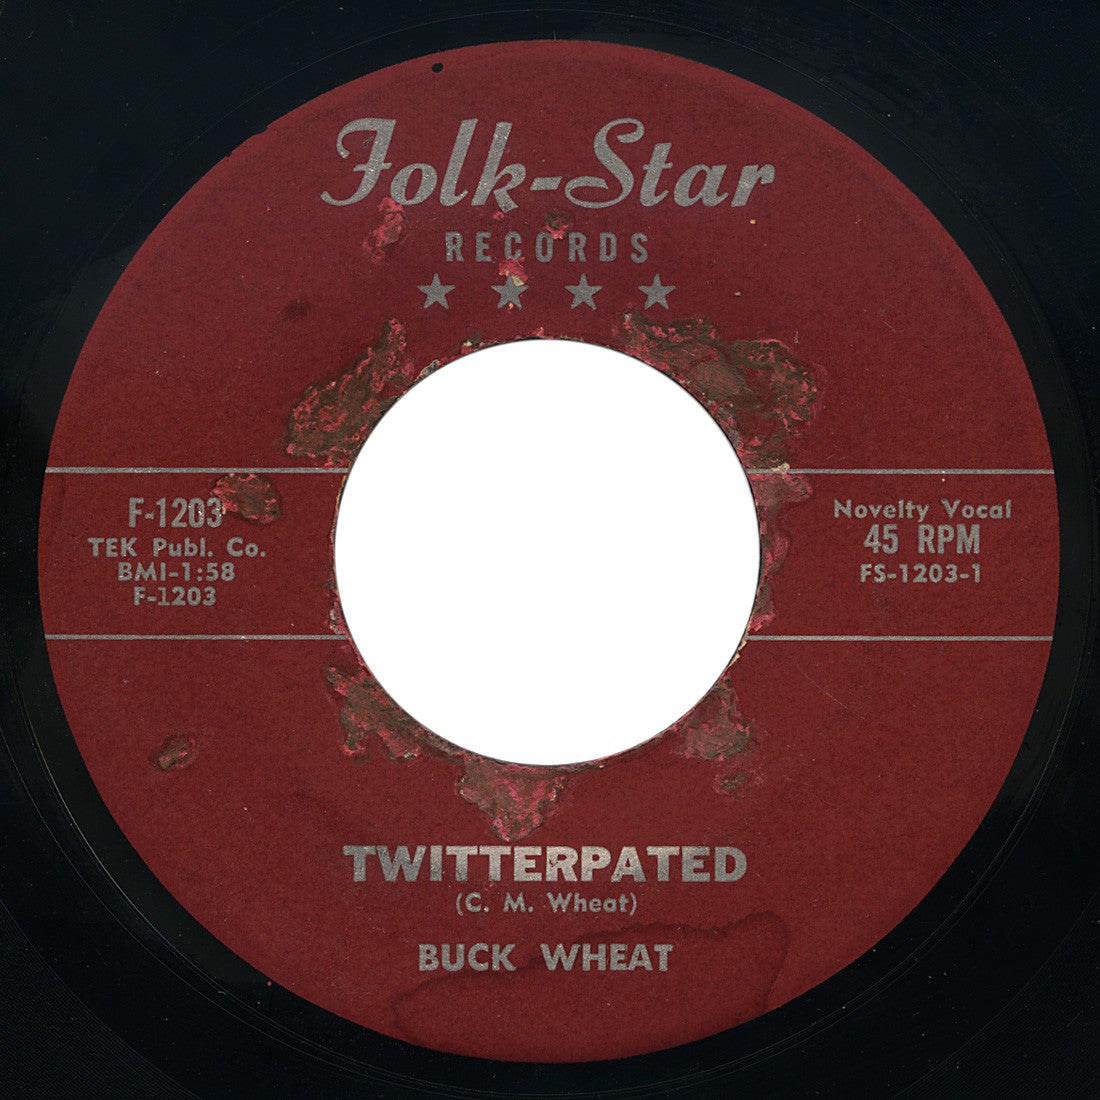 Buck Wheat – Twitterpated / Take Two Steps – Folk-Star